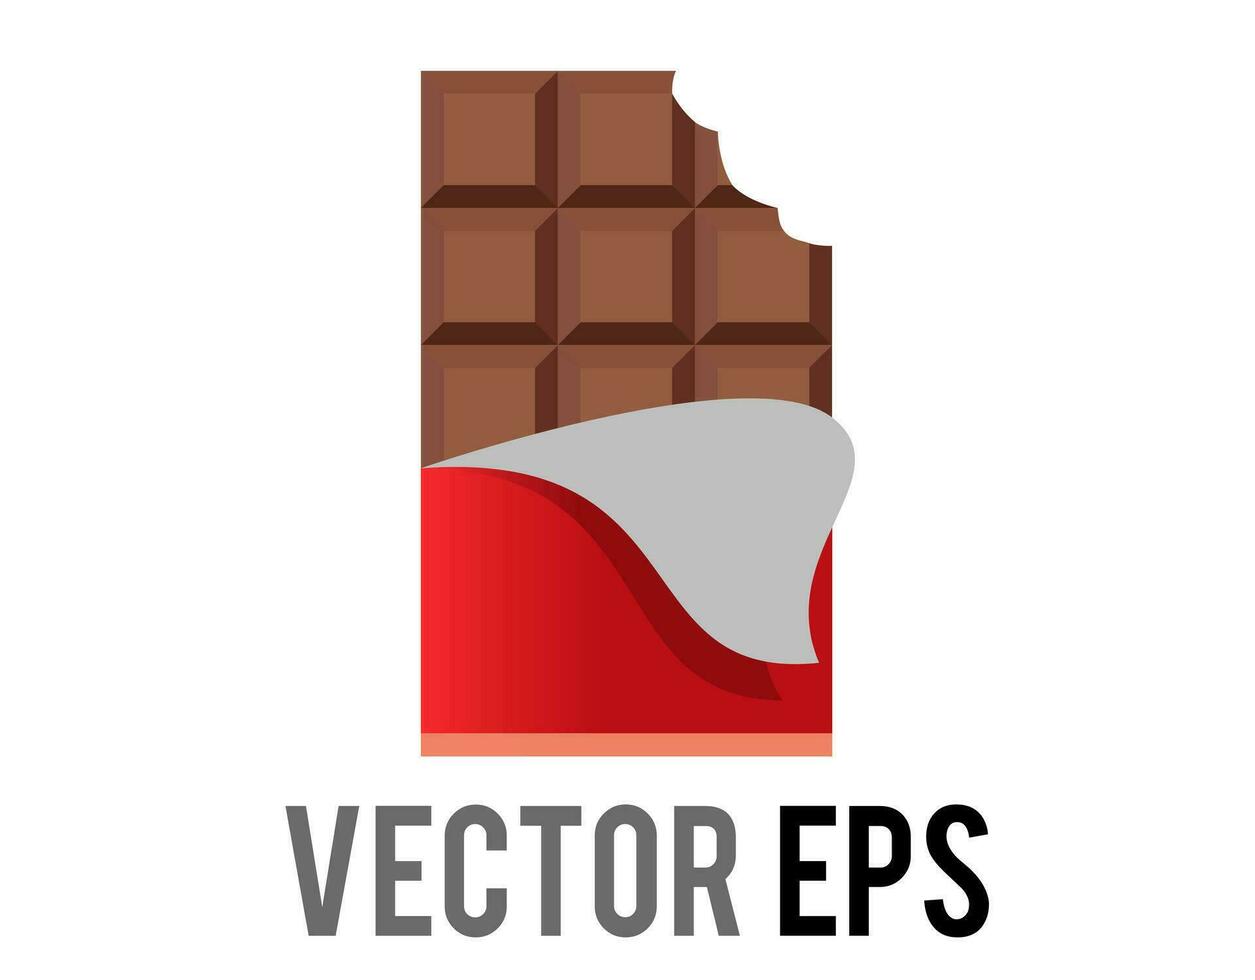 Vektor braun Block von dunkel Schokolade Bar Symbol mit rot Verpackung